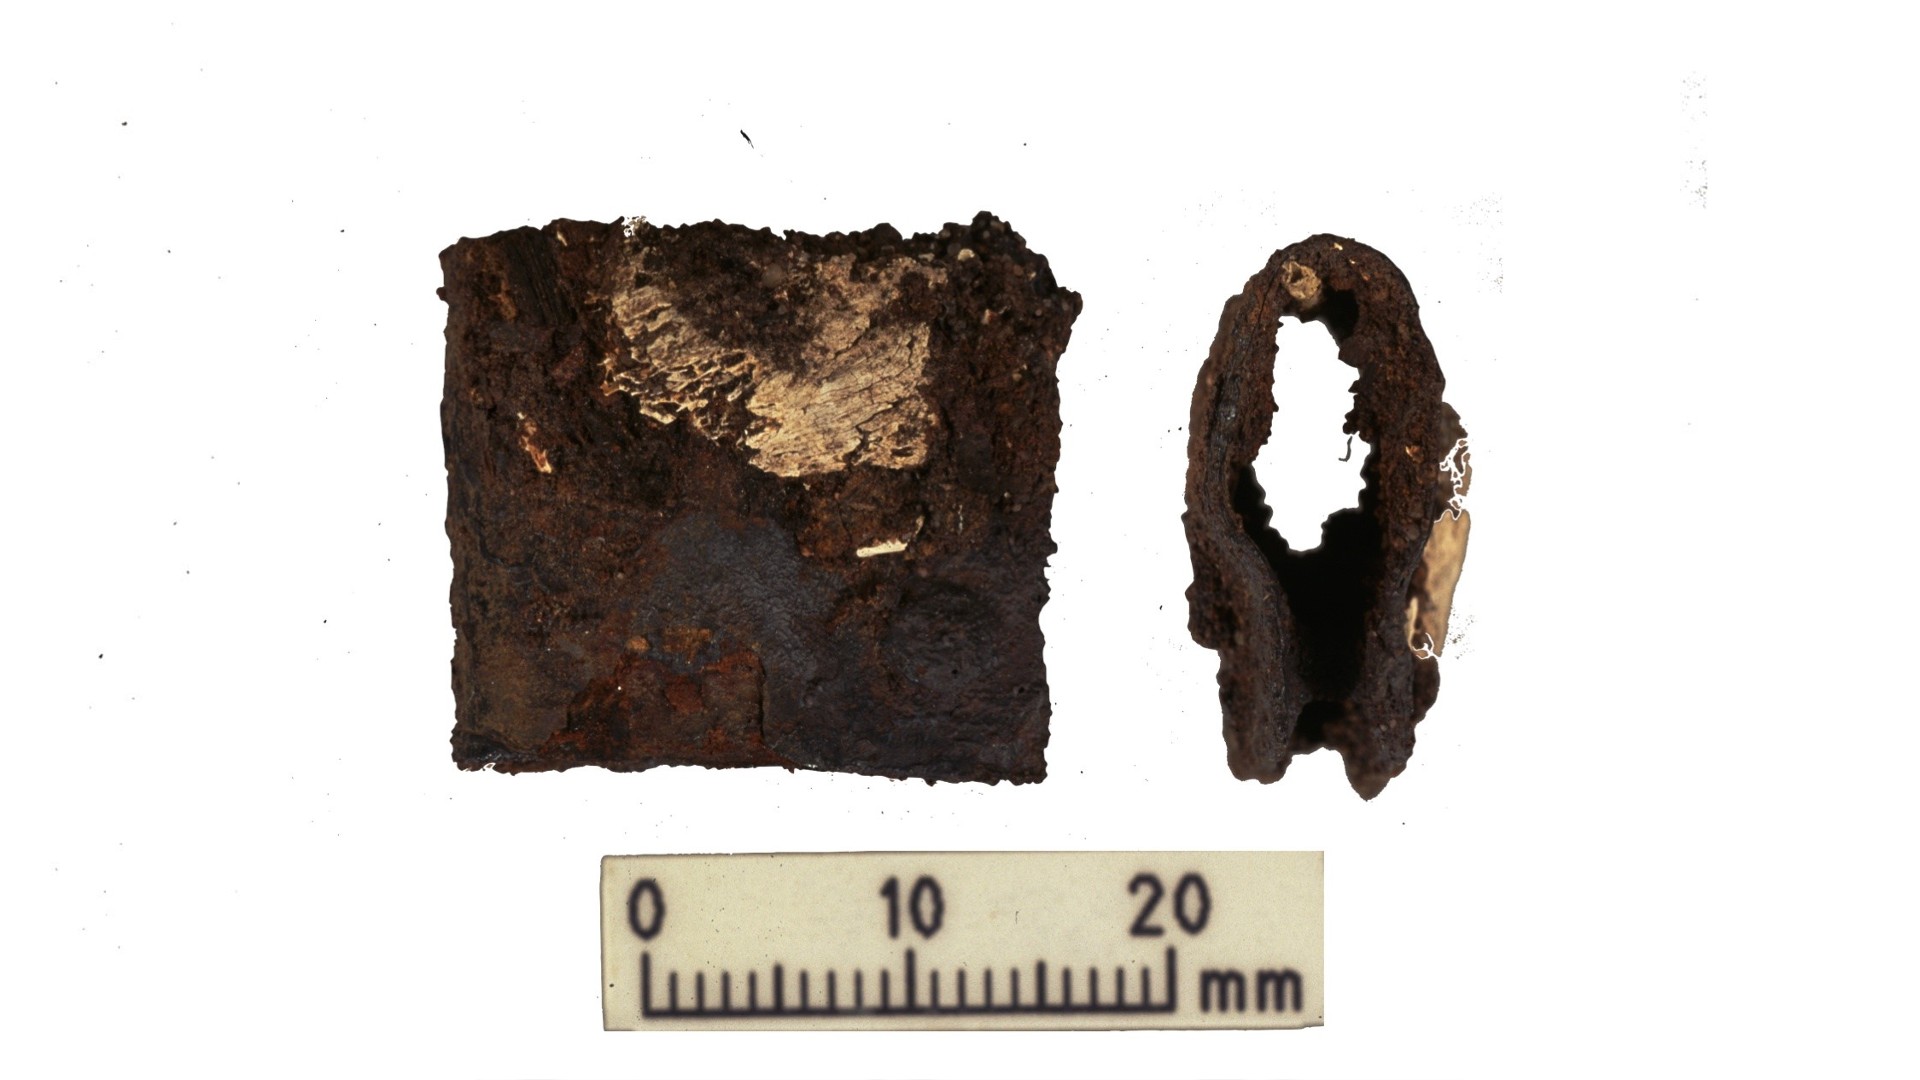 تم العثور على مشبك من درع محارب الفايكنج خلال الحفريات الأصلية في 1998-2000.  تم العثور على المشبك في نفس القبر حيث تم تحليل بقايا الإنسان والحيوان خلال البحث الأخير.